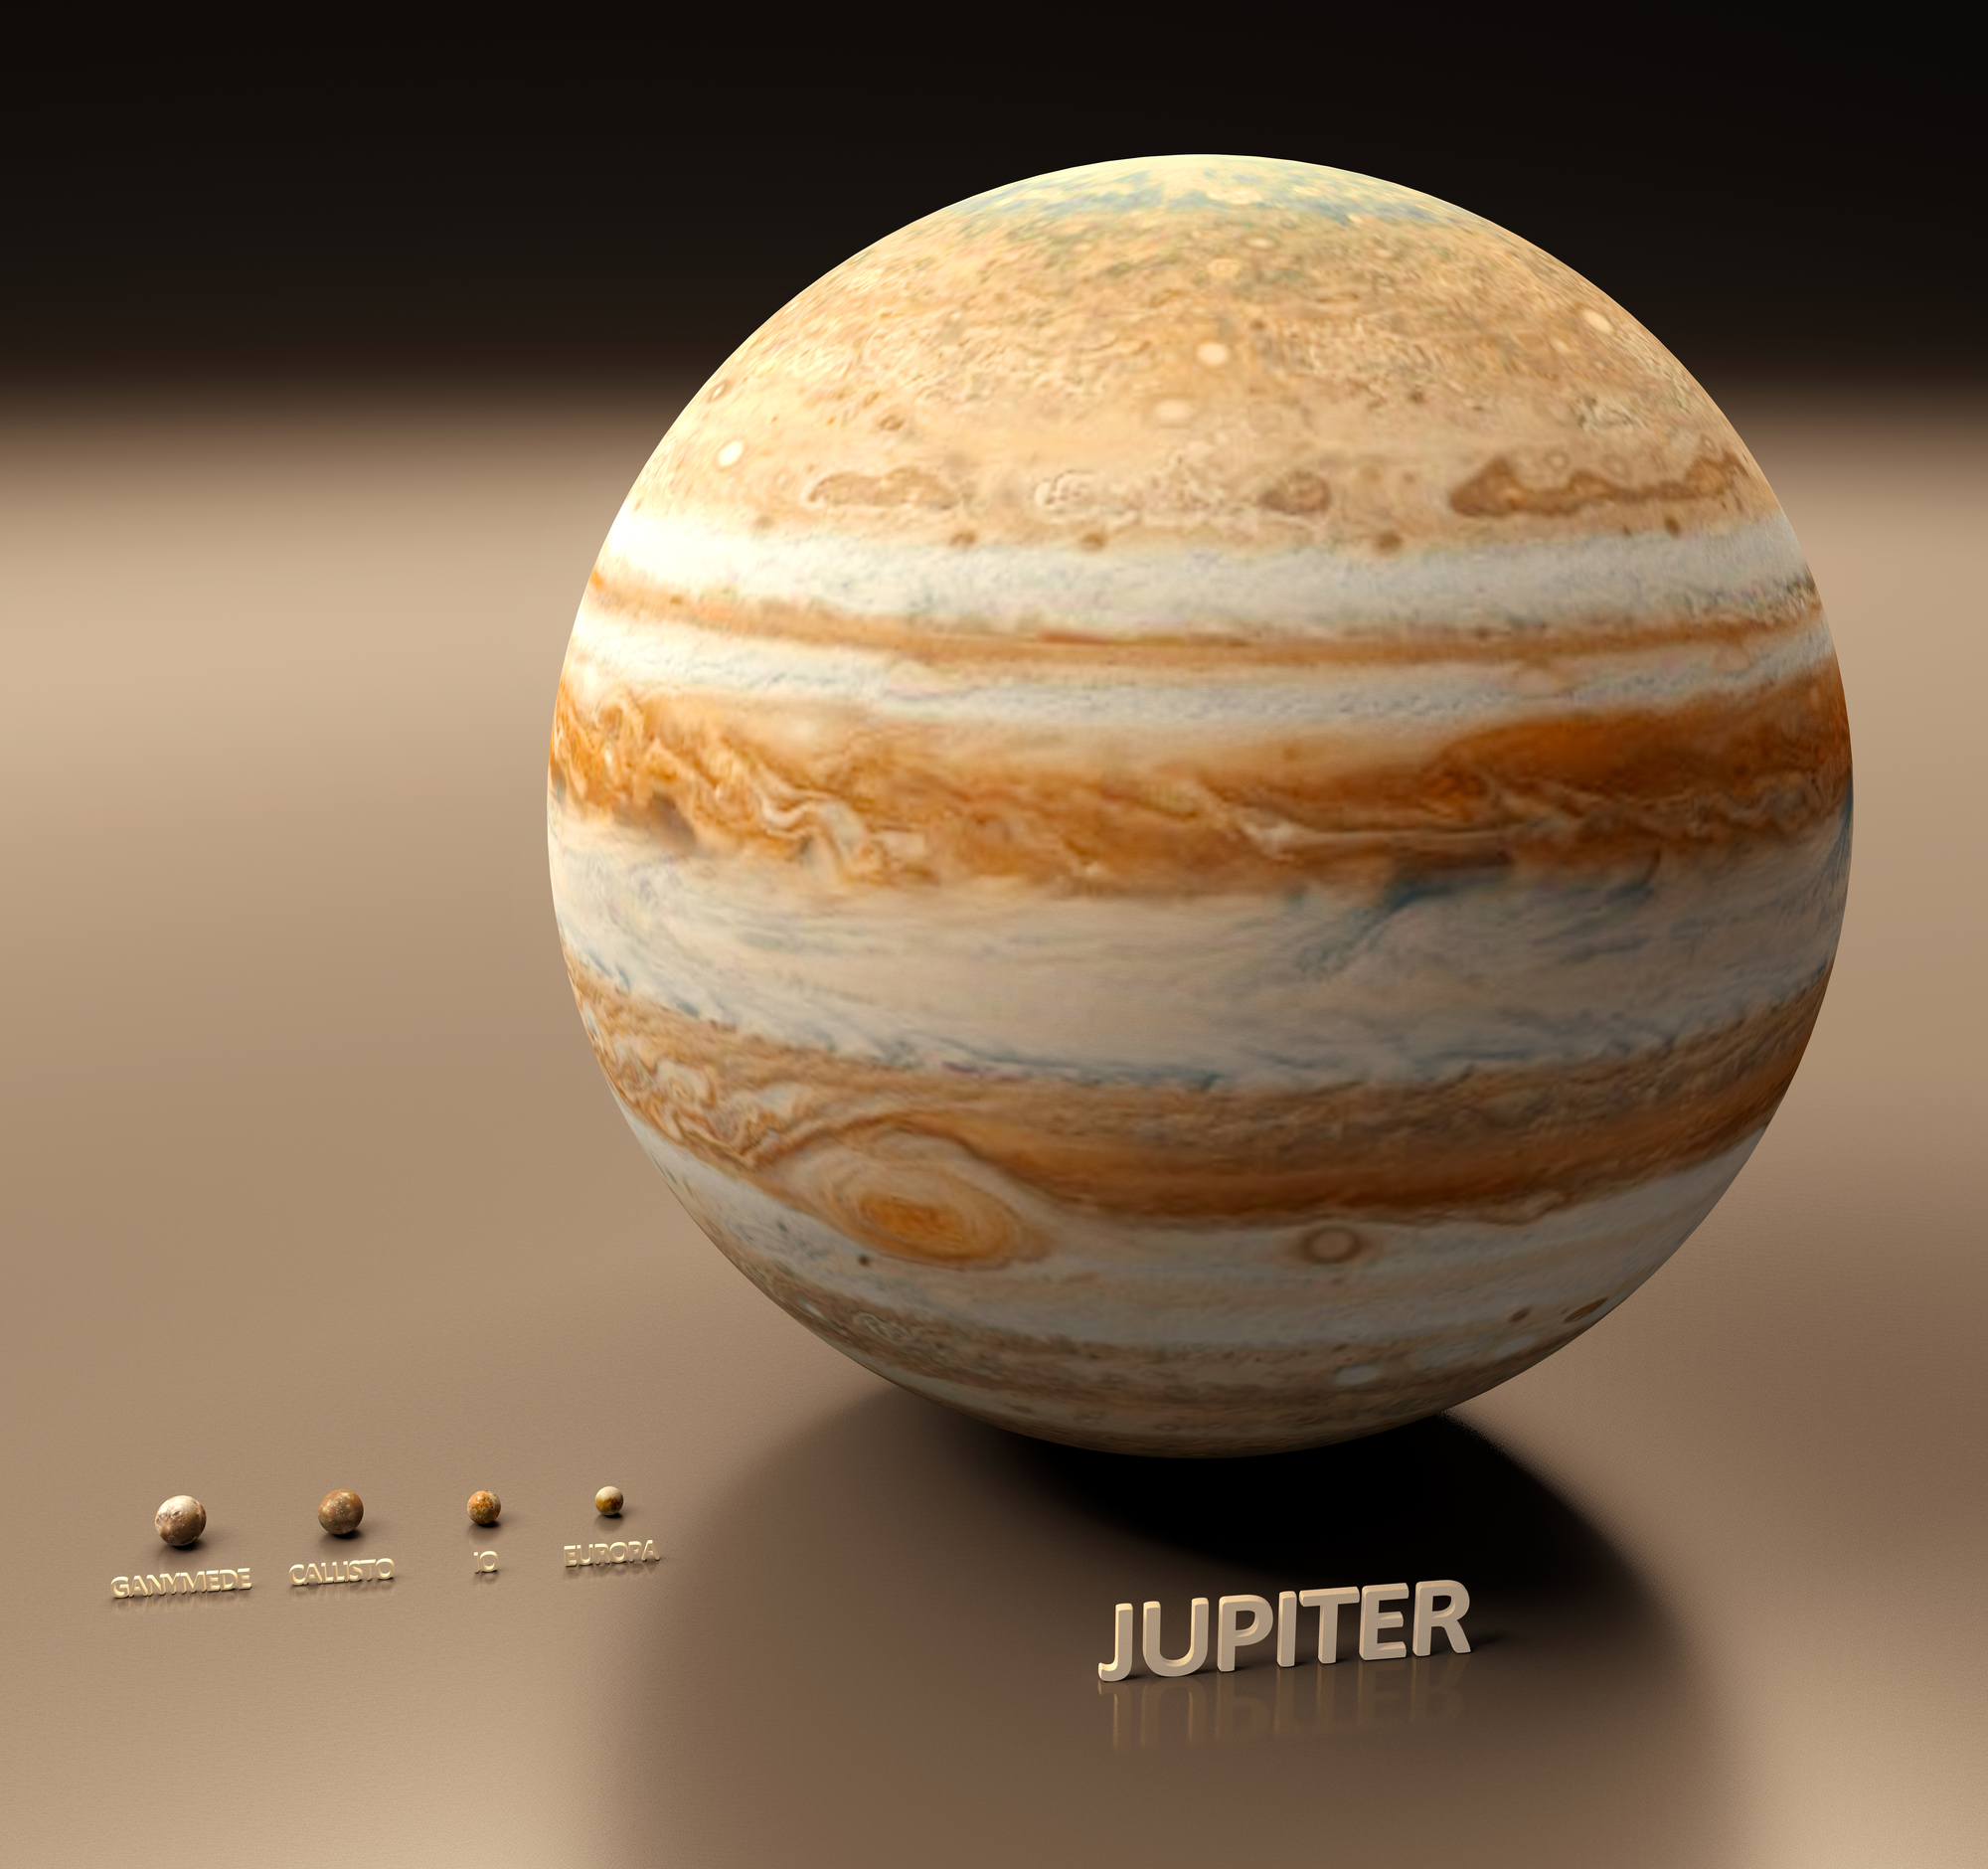 Konyhasó lehet a Jupiter Európa nevű holdja felszínén